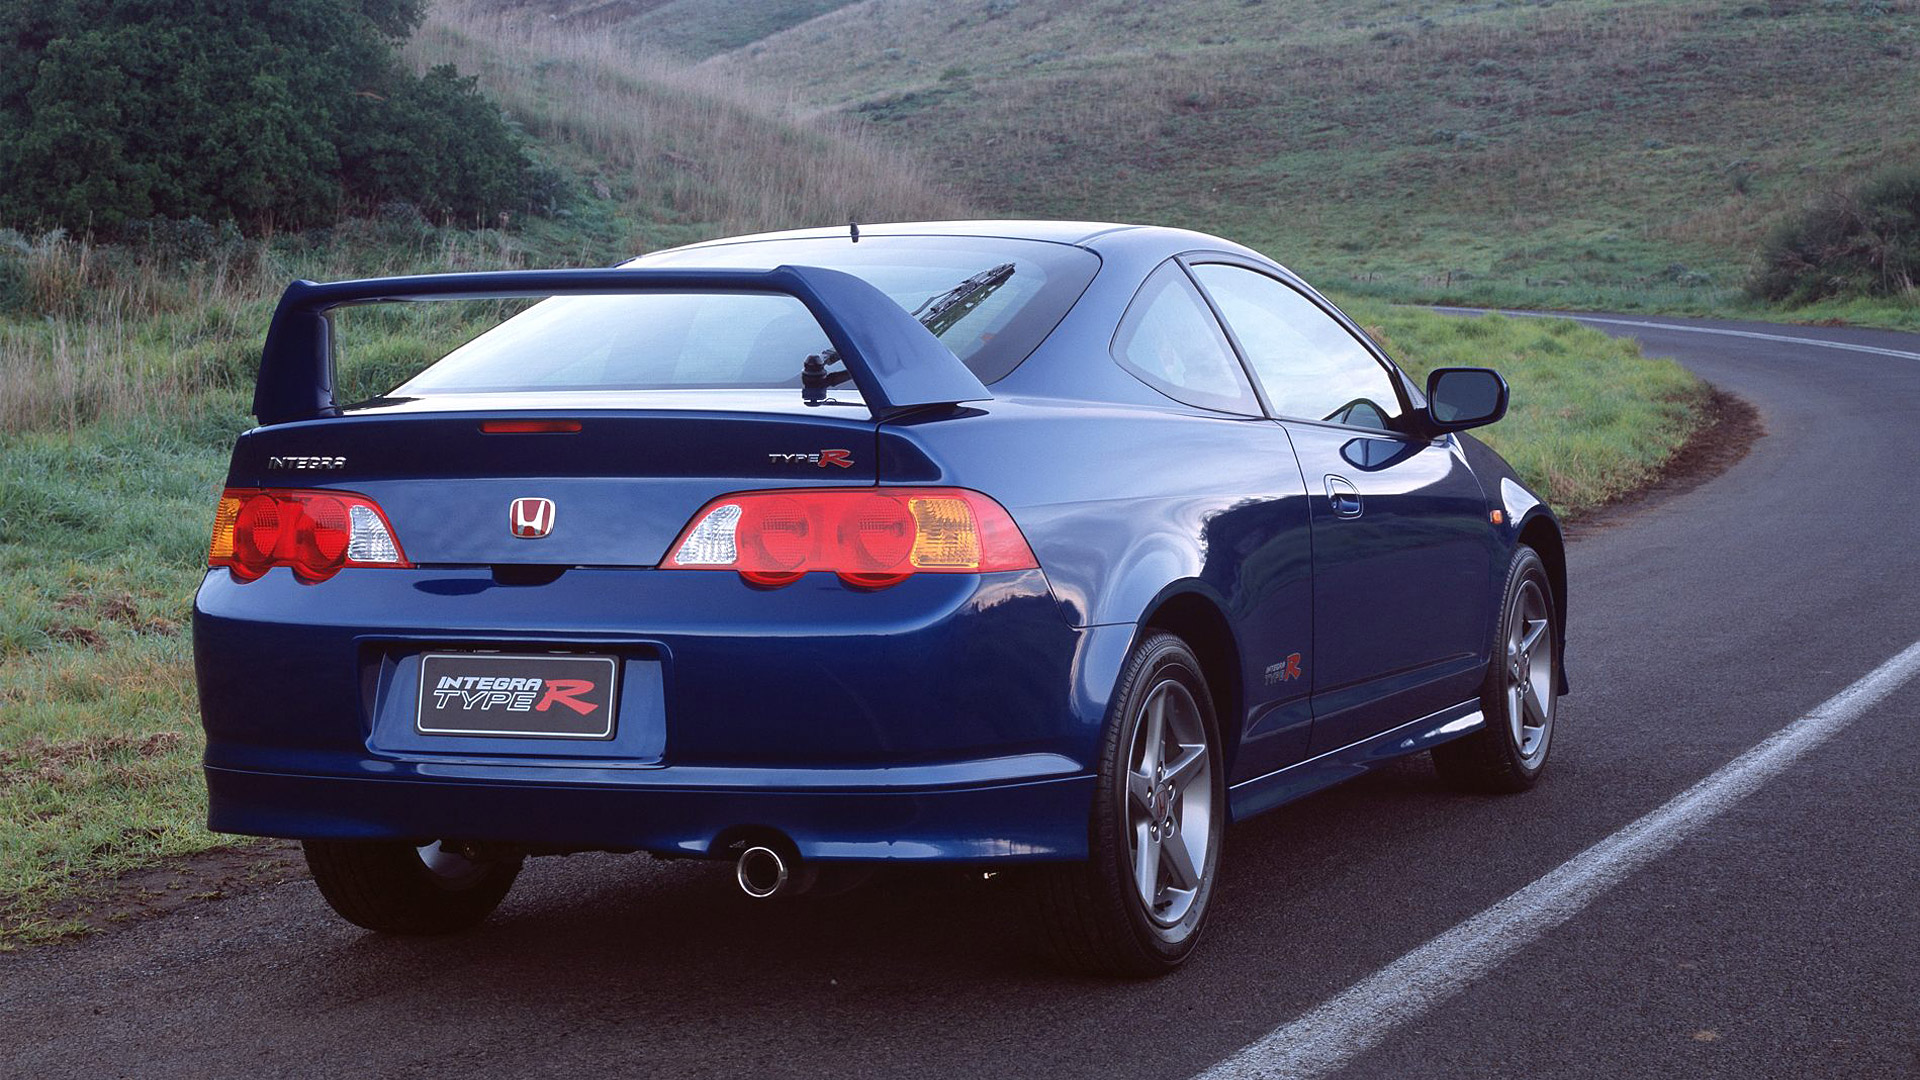  2001 Honda Integra Type R Wallpaper.